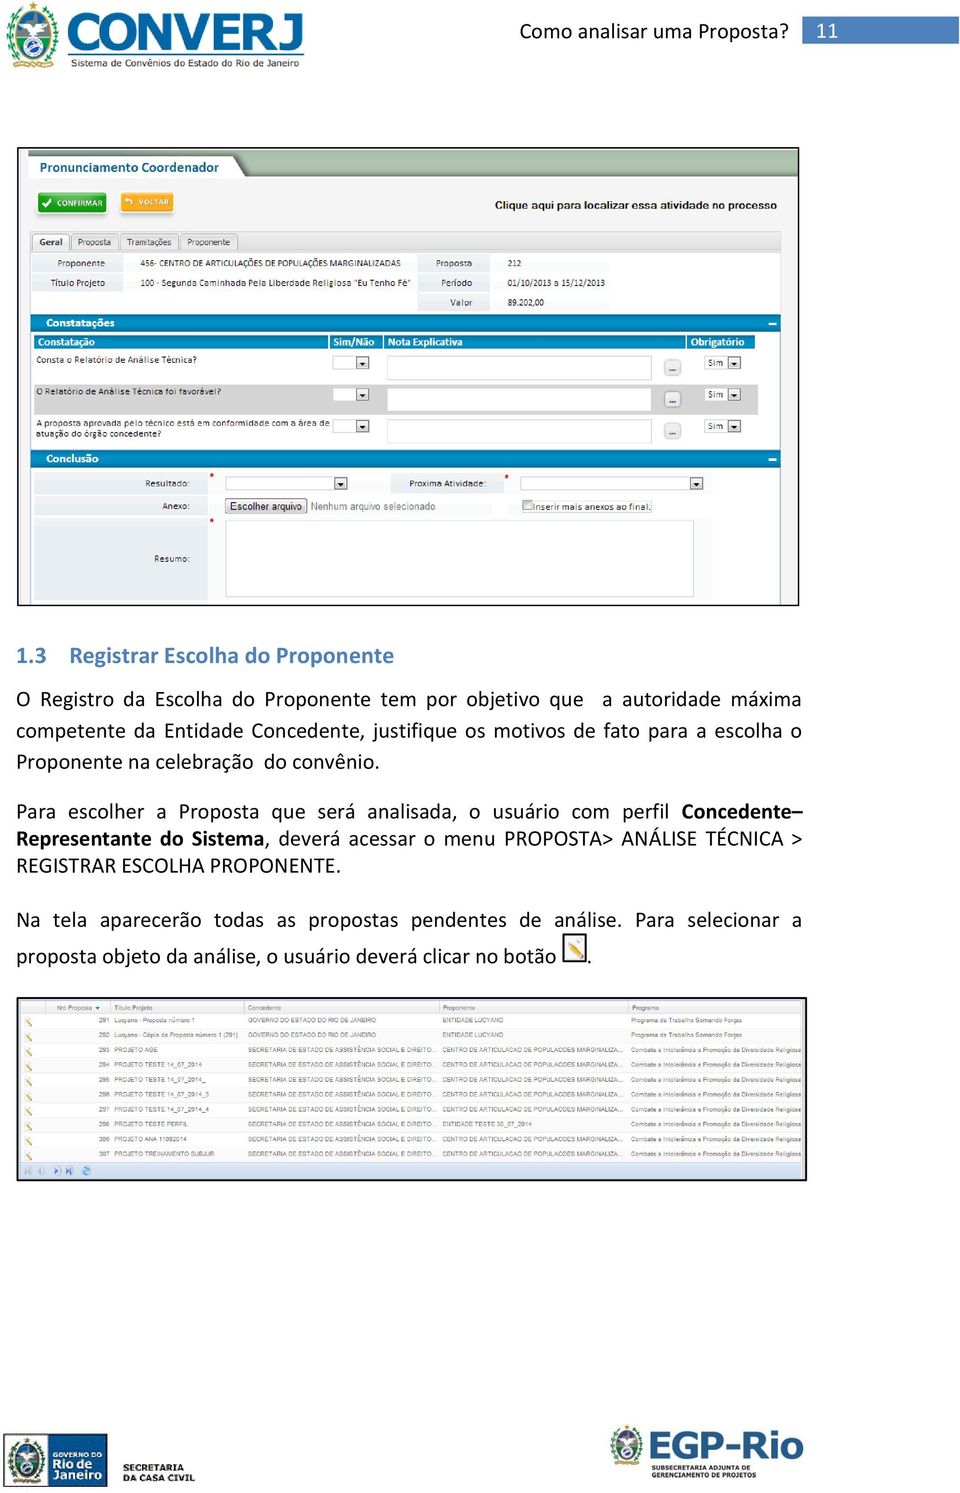 Para escolher a Proposta que será analisada, o usuário com perfil Concedente Representante do Sistema, deverá acessar o menu PROPOSTA>